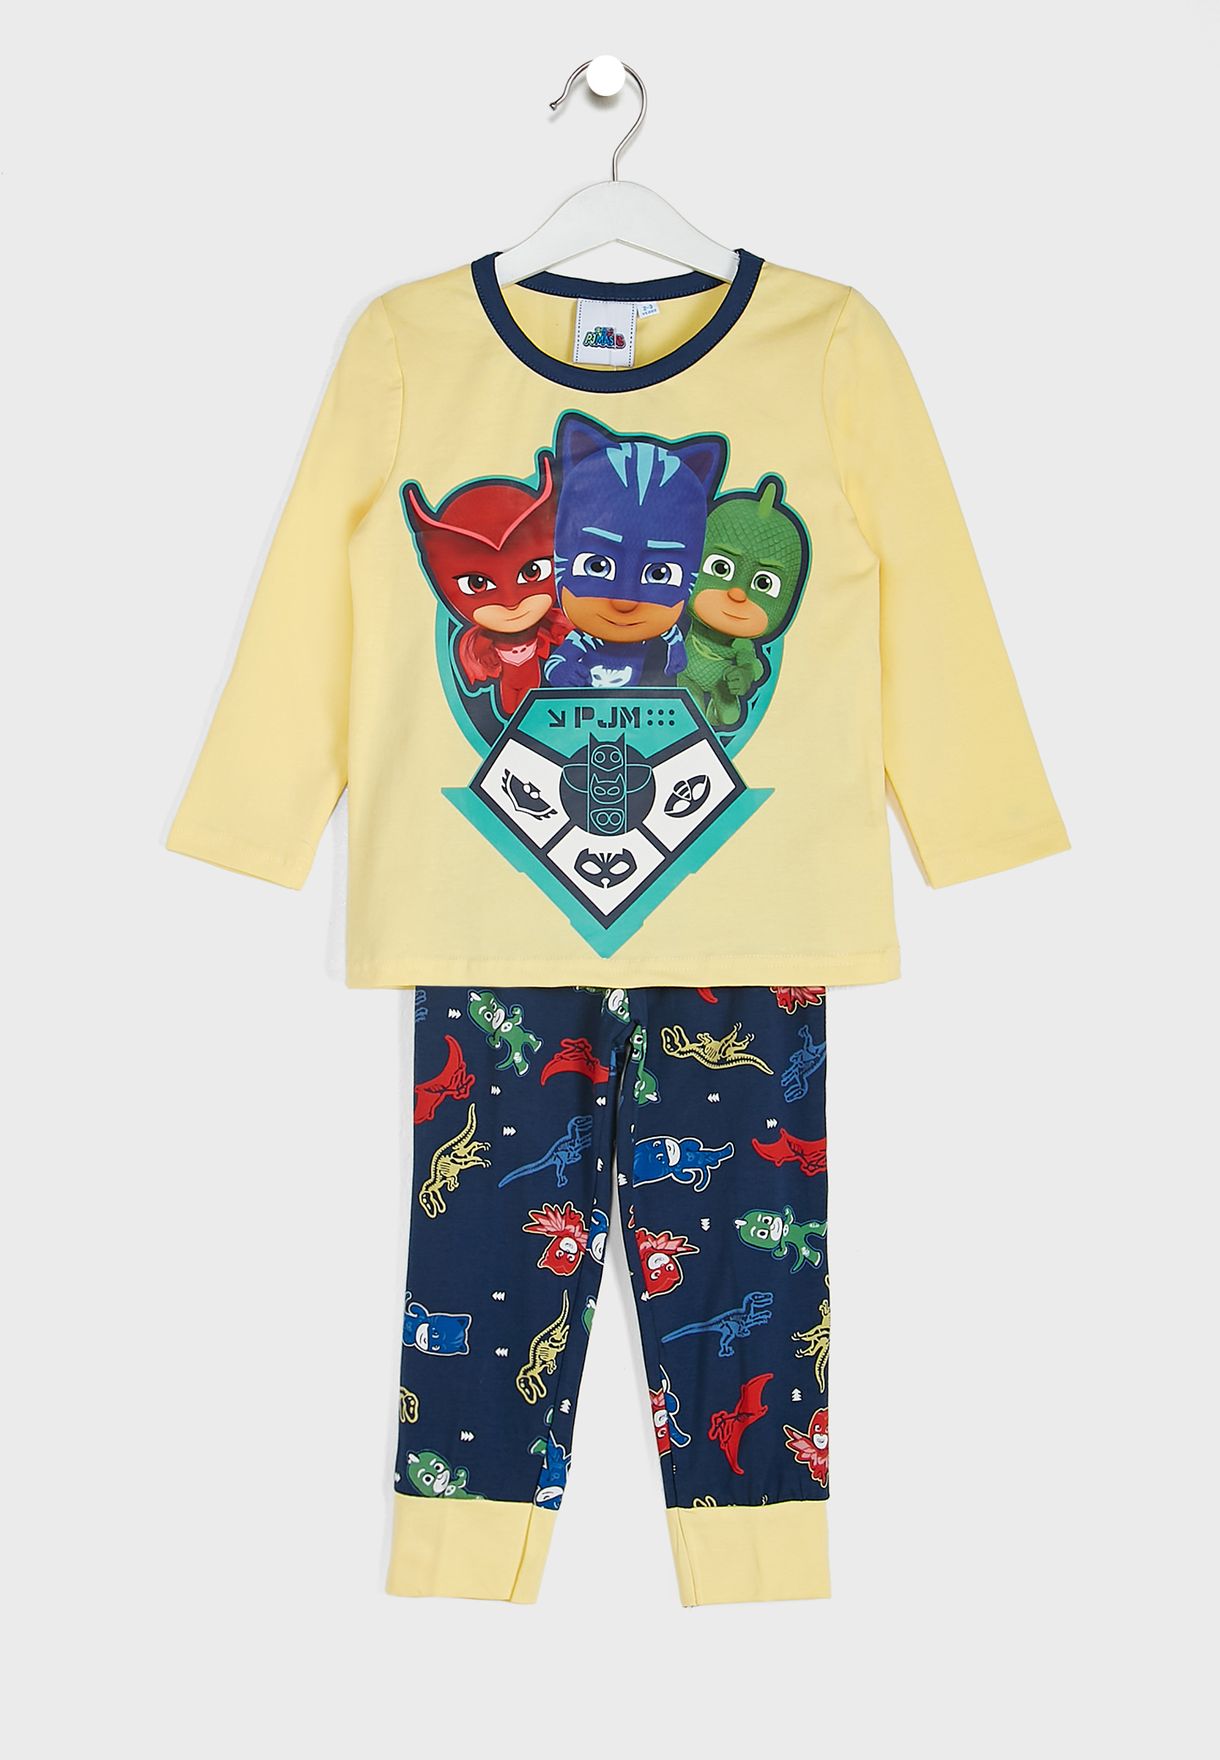 Kids Pj Masks Pyjama Set